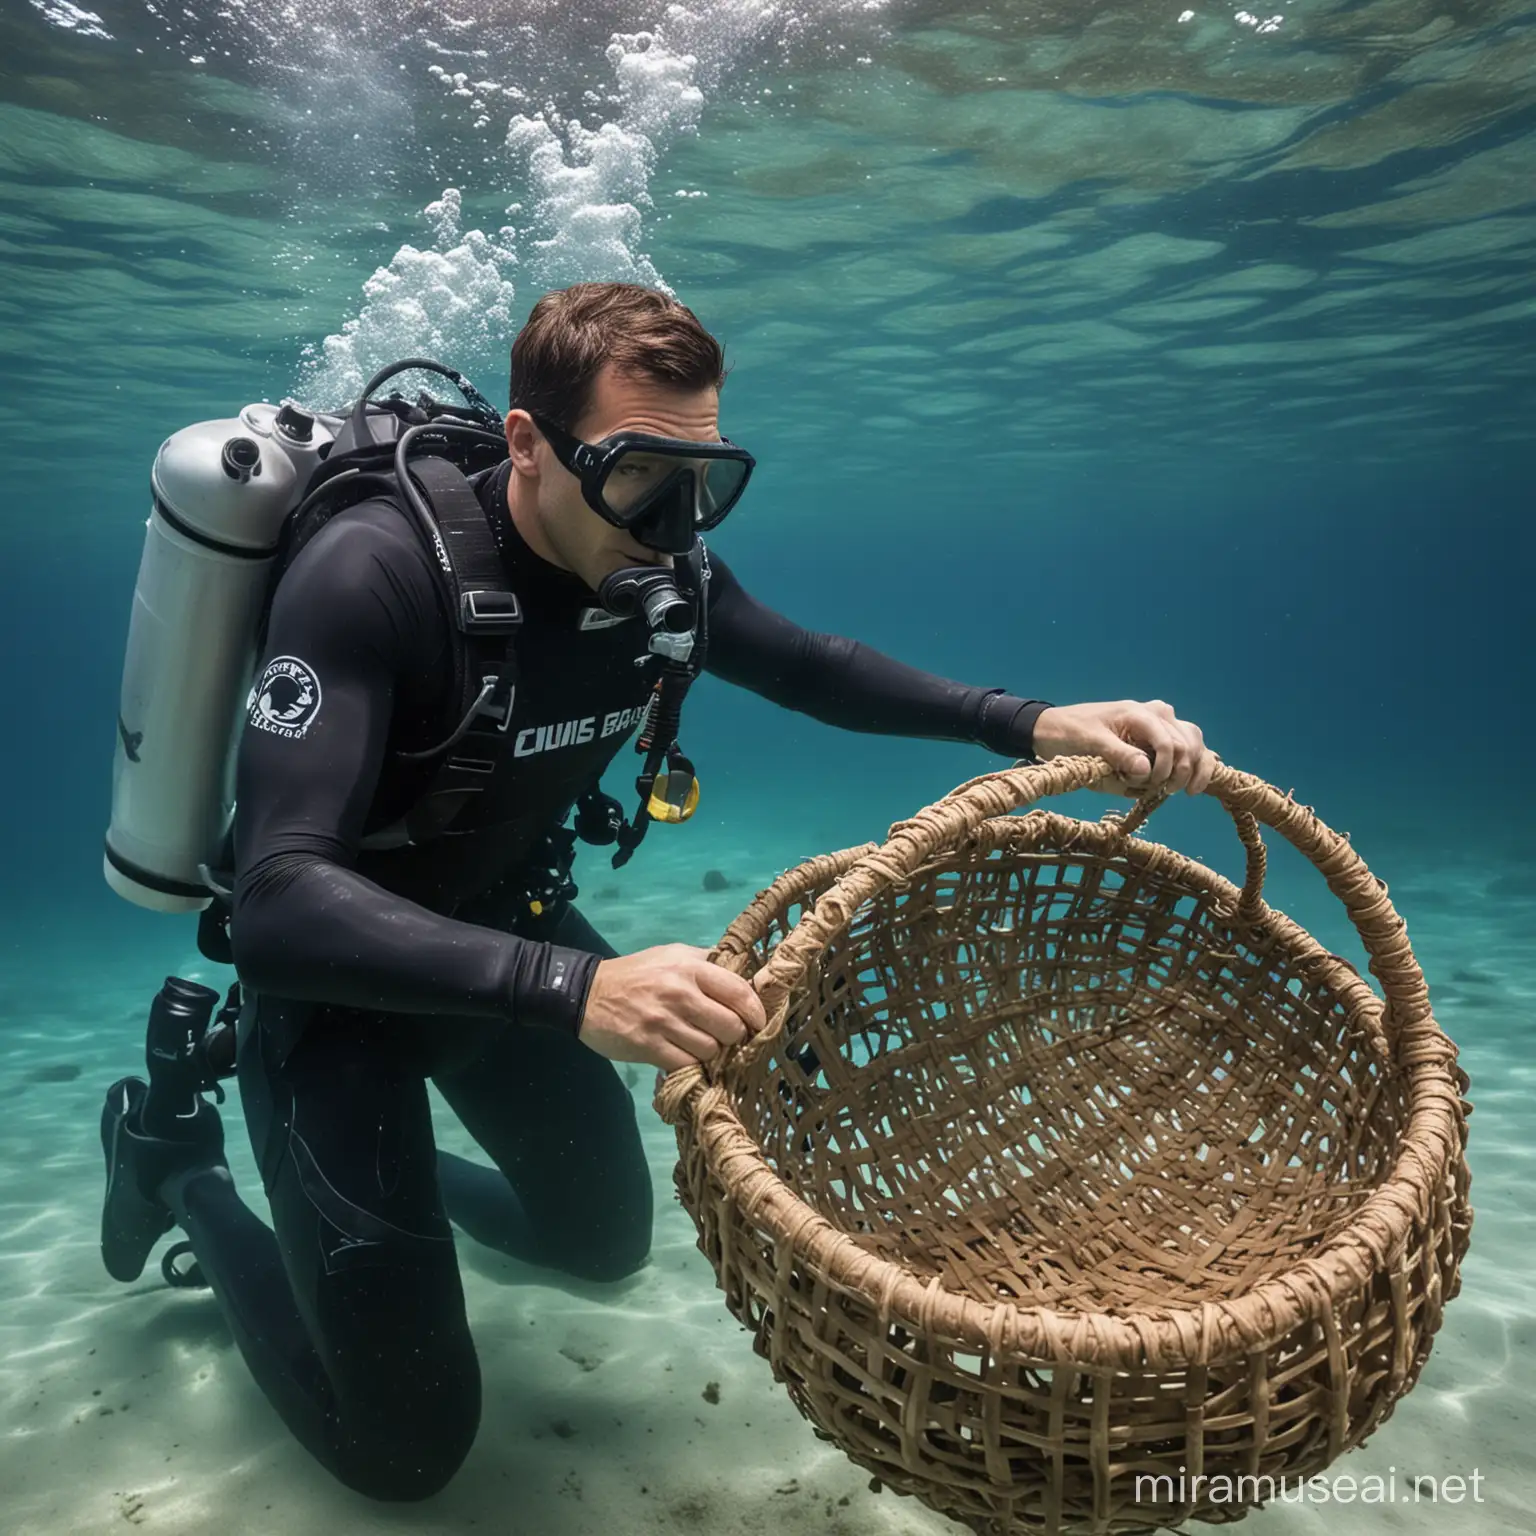 man in scuba gear weaving a basket under water
